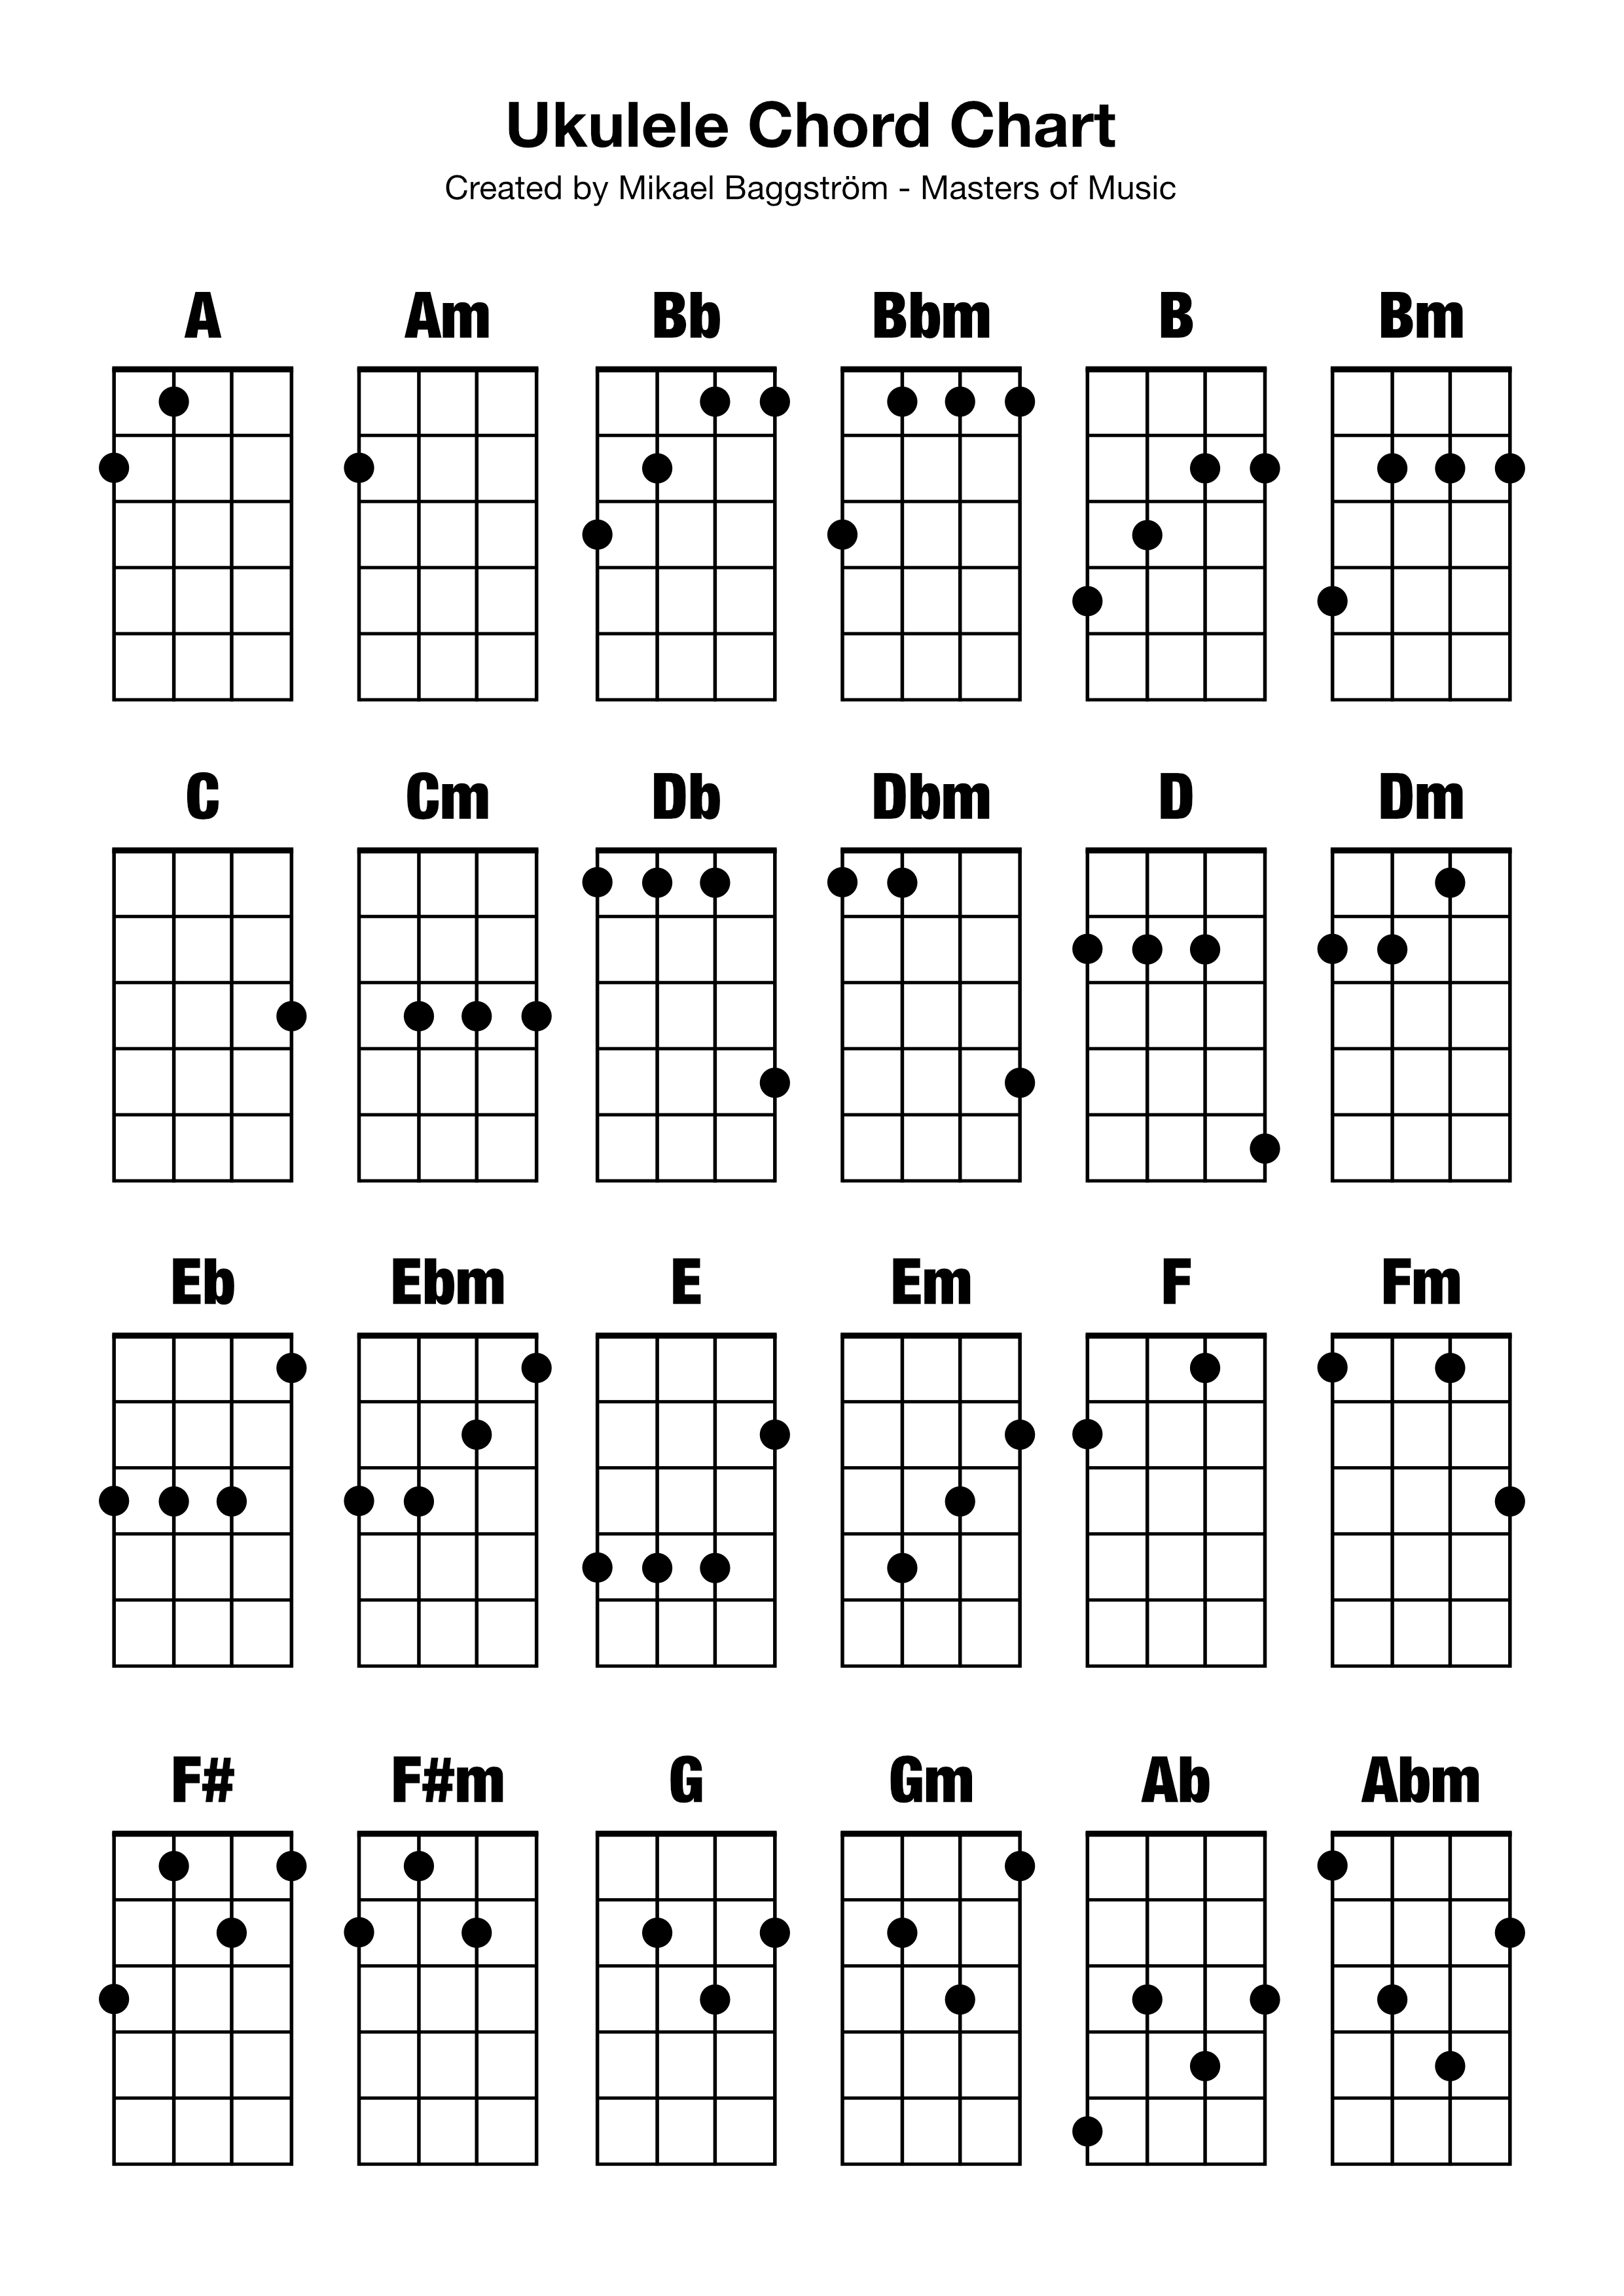 ukulele-chord-chart-professional-composers